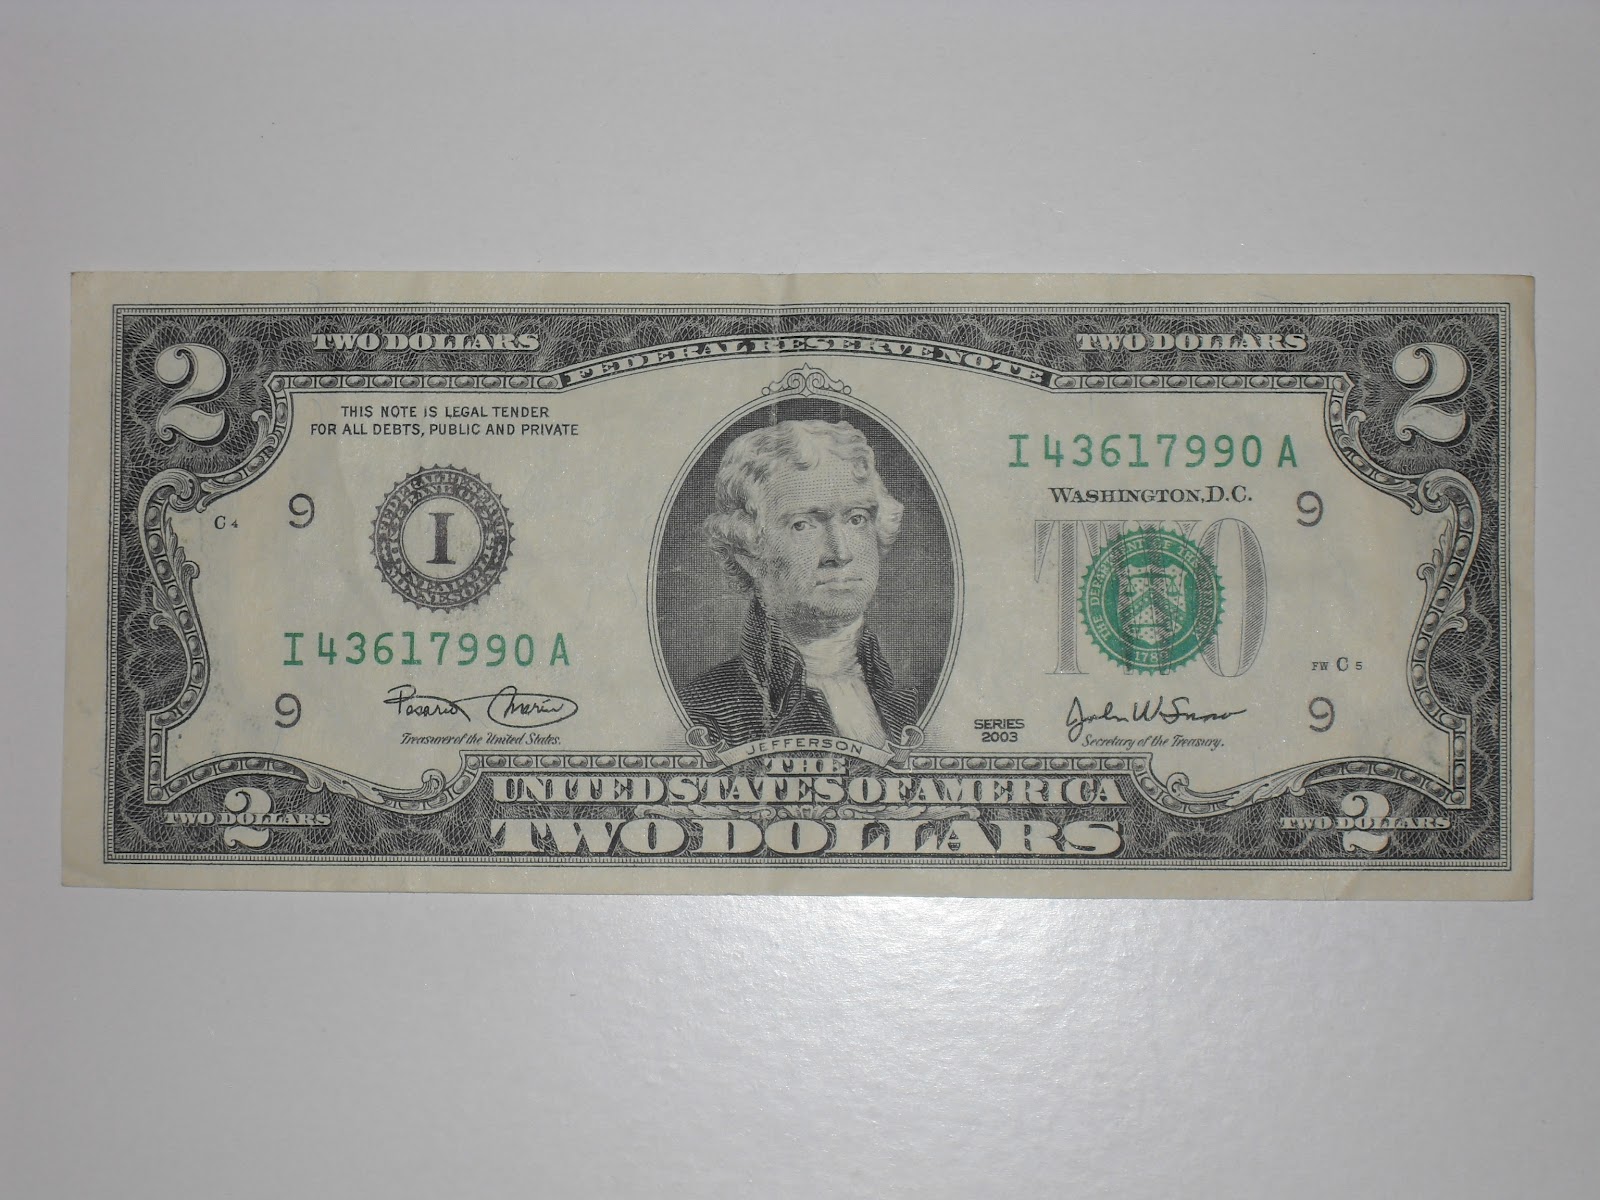 Crónicas de monedas colección de fotografías de billetes de un dólar